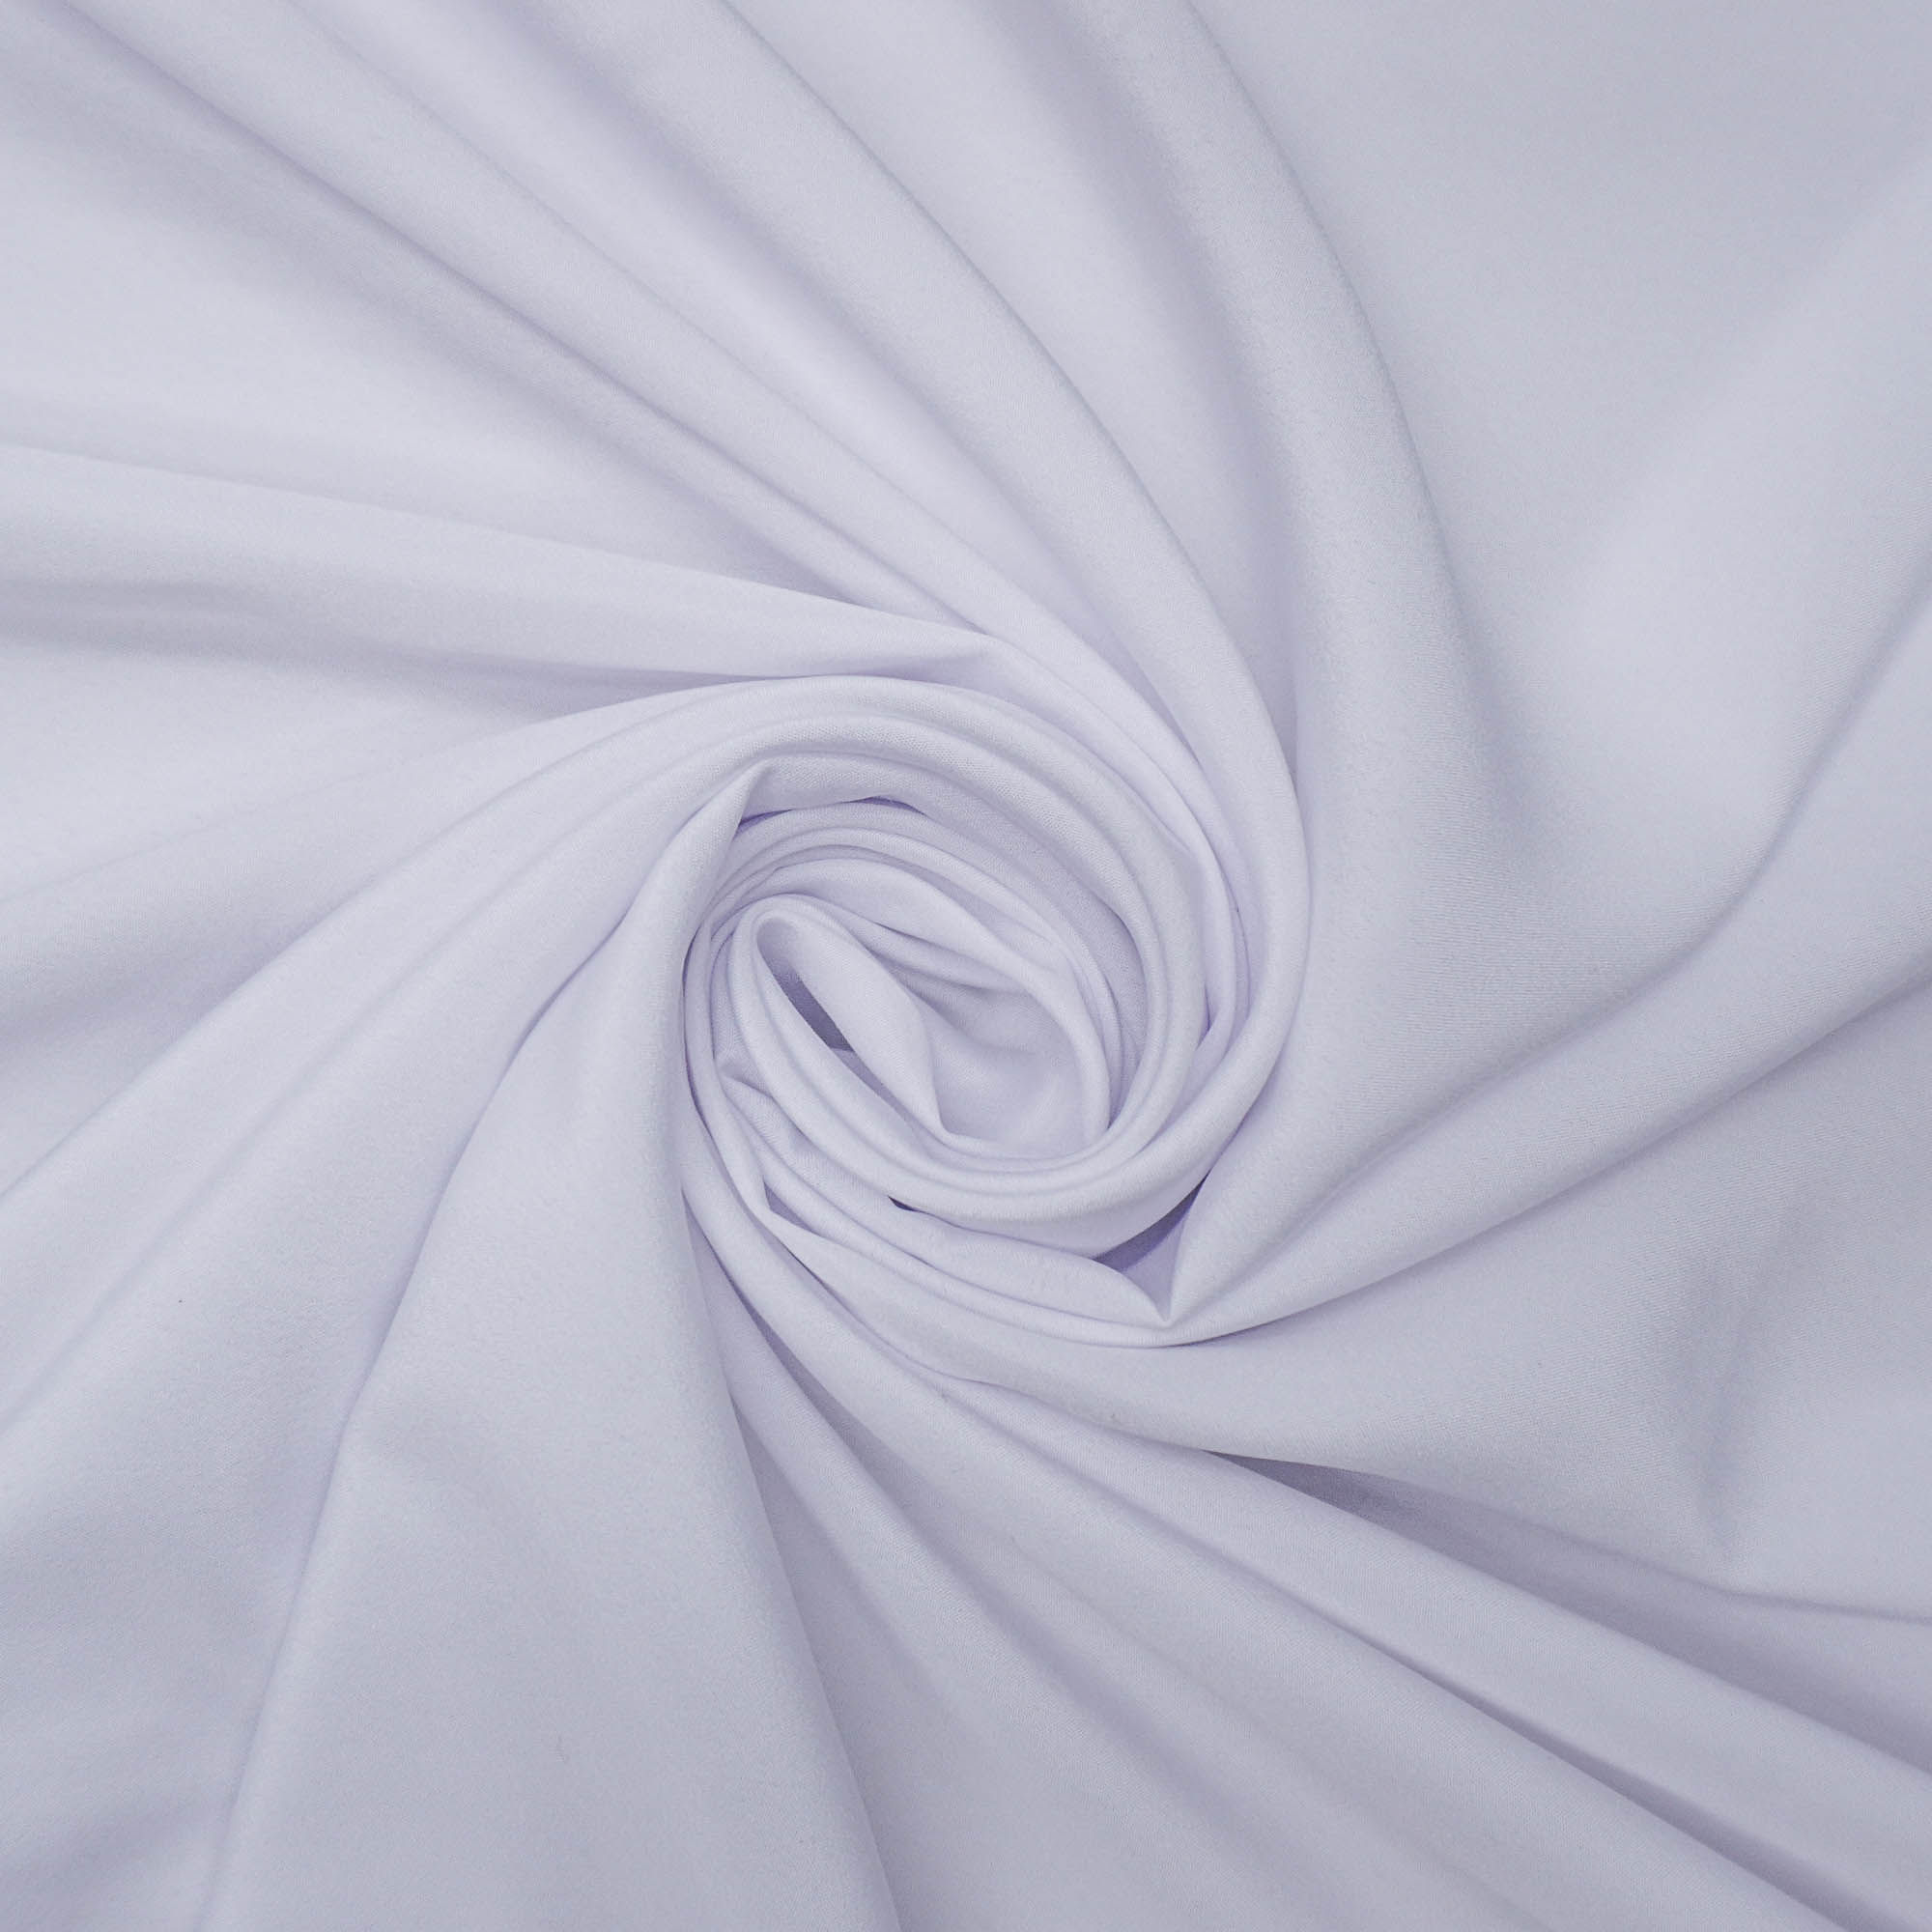 Tecido forro 100% poliester para tecido leve branco